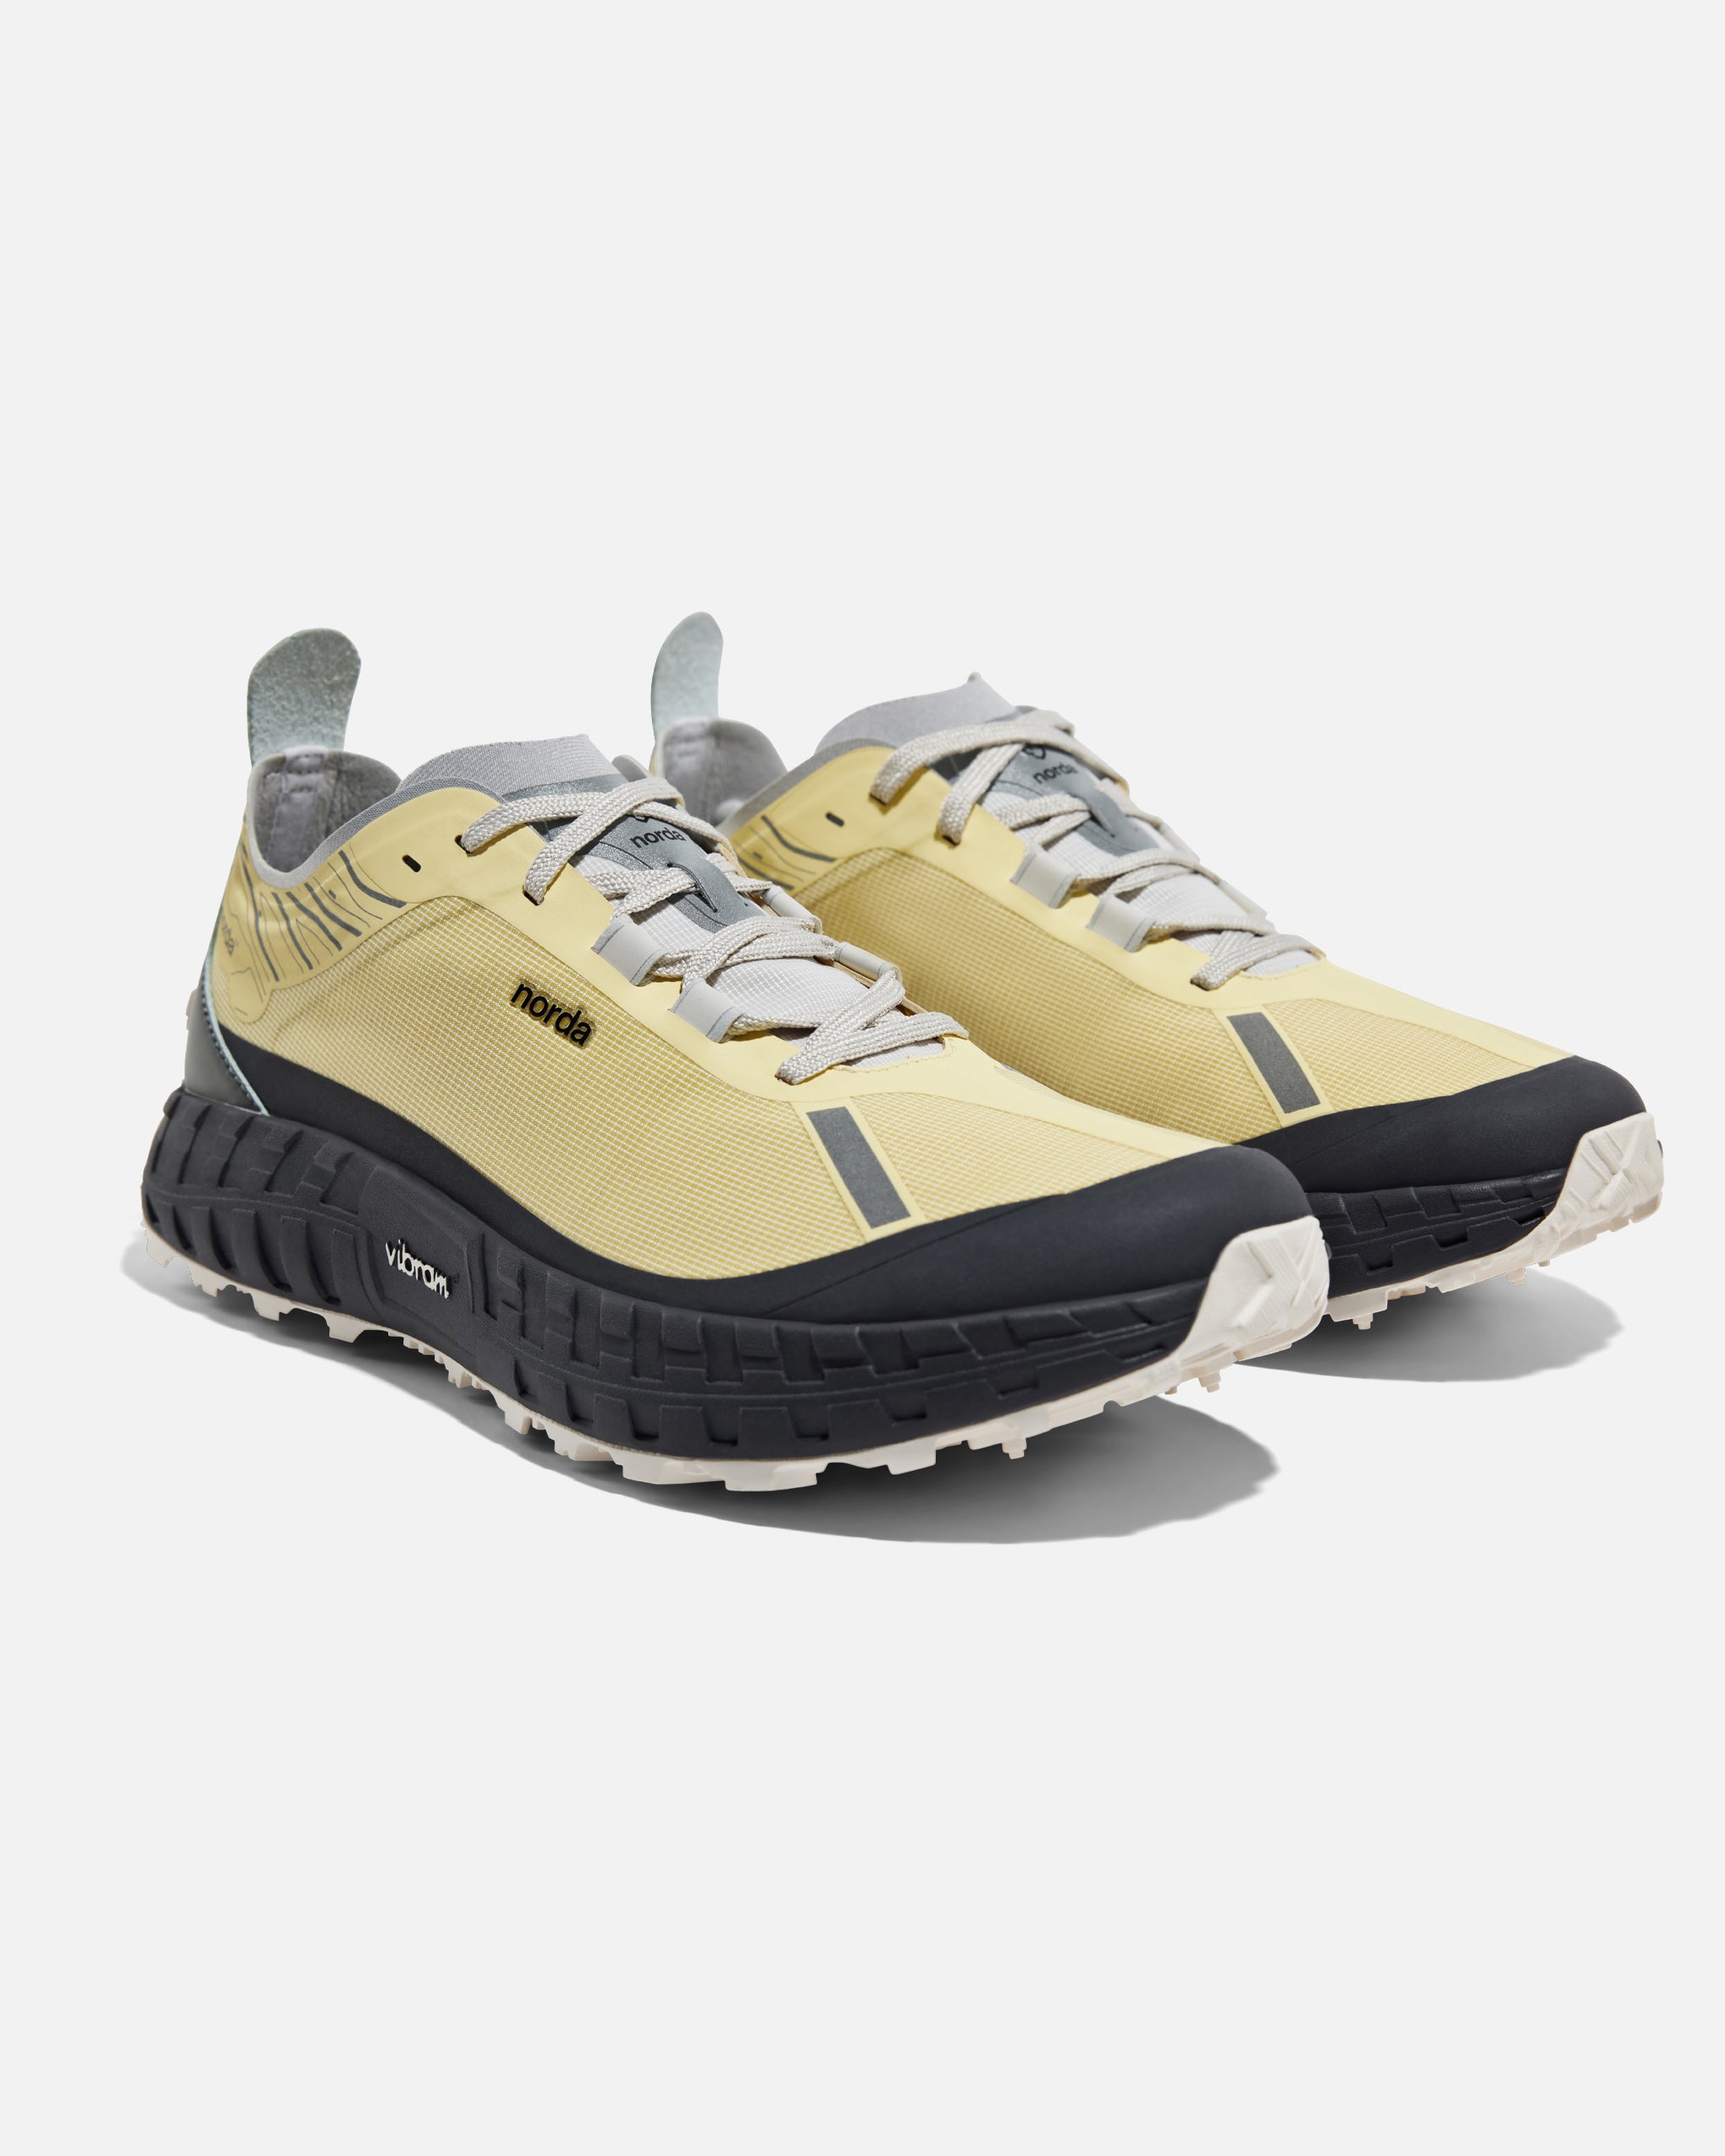 Norda Run 001 Lemon Shoes Sneakers Men